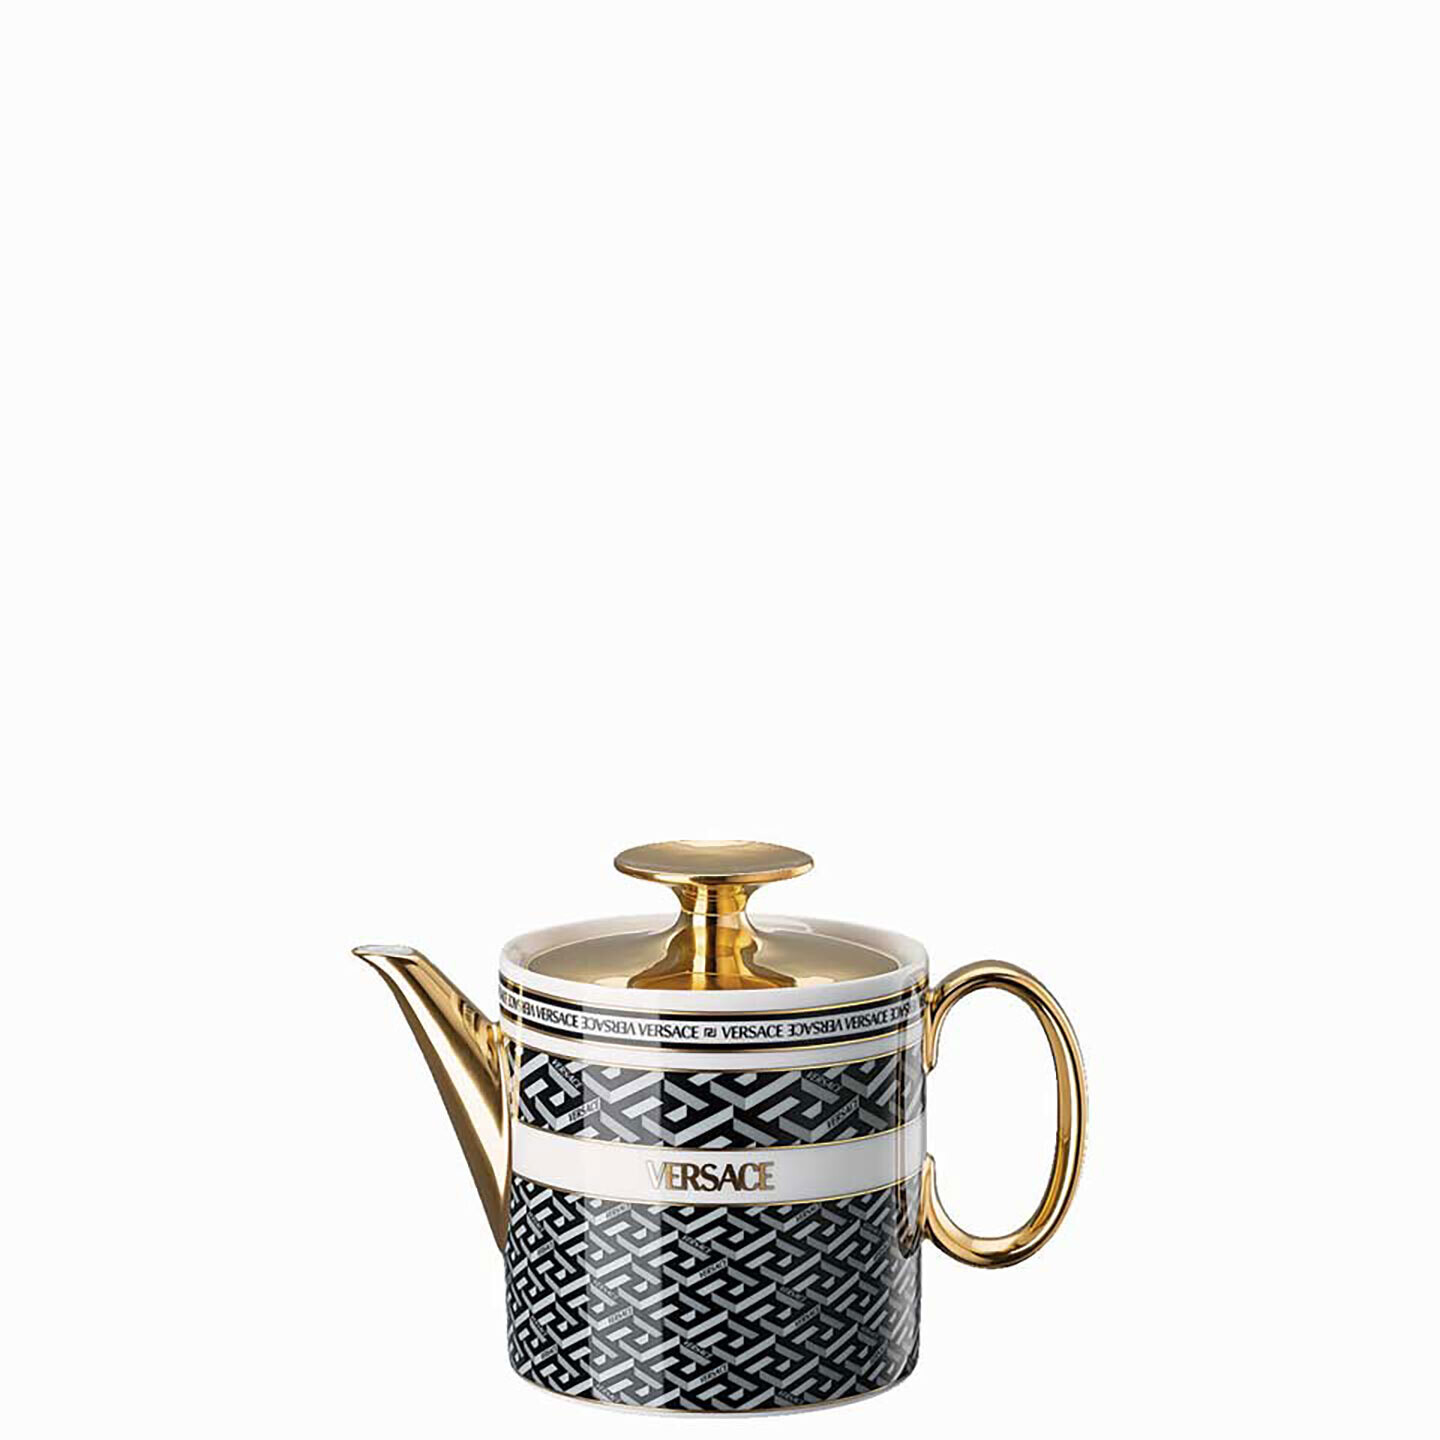 Versace La Greca Signature Black Tea Pot for Two 19335-403765-14220